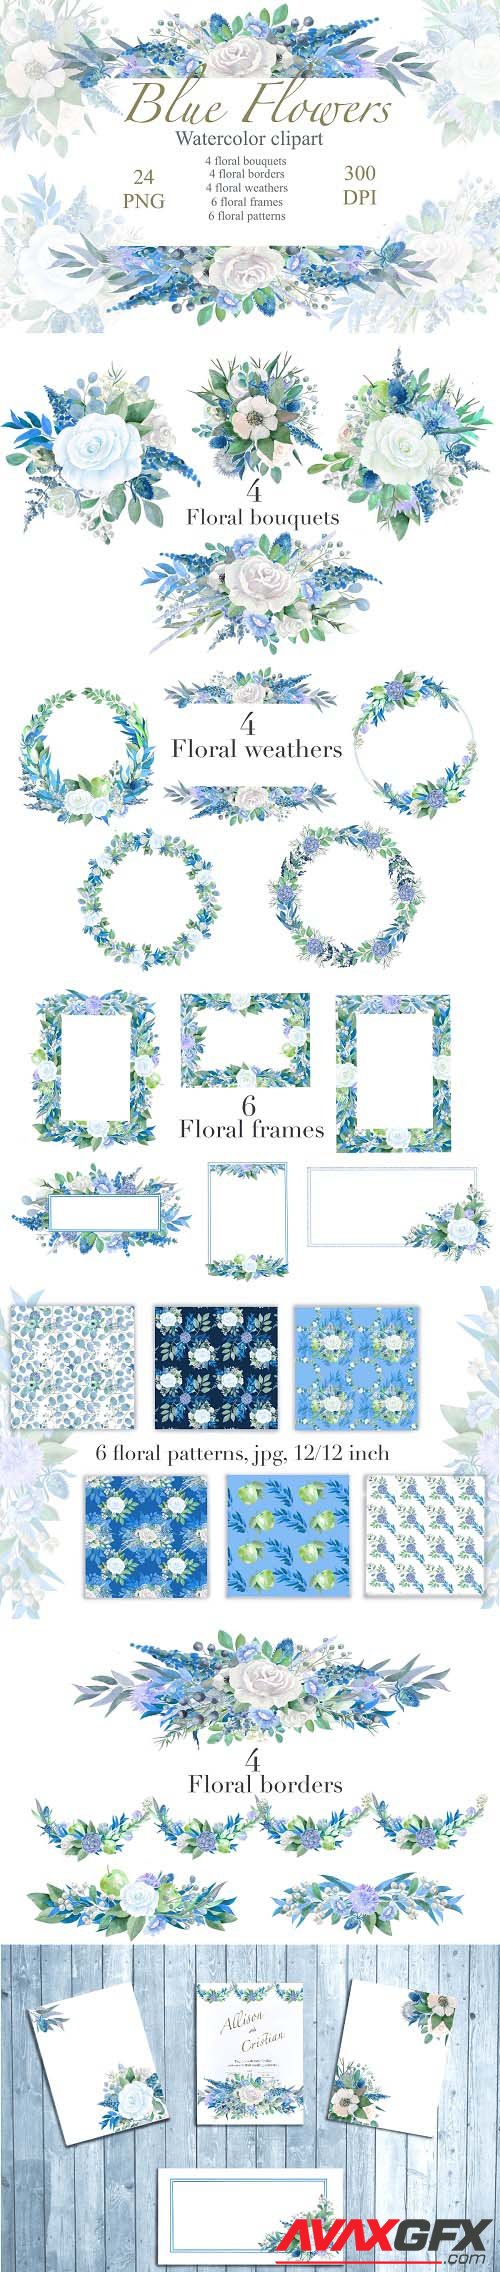 Blue Floral watercolor Clipart, Wedding Arrangements, Frames - 1425792